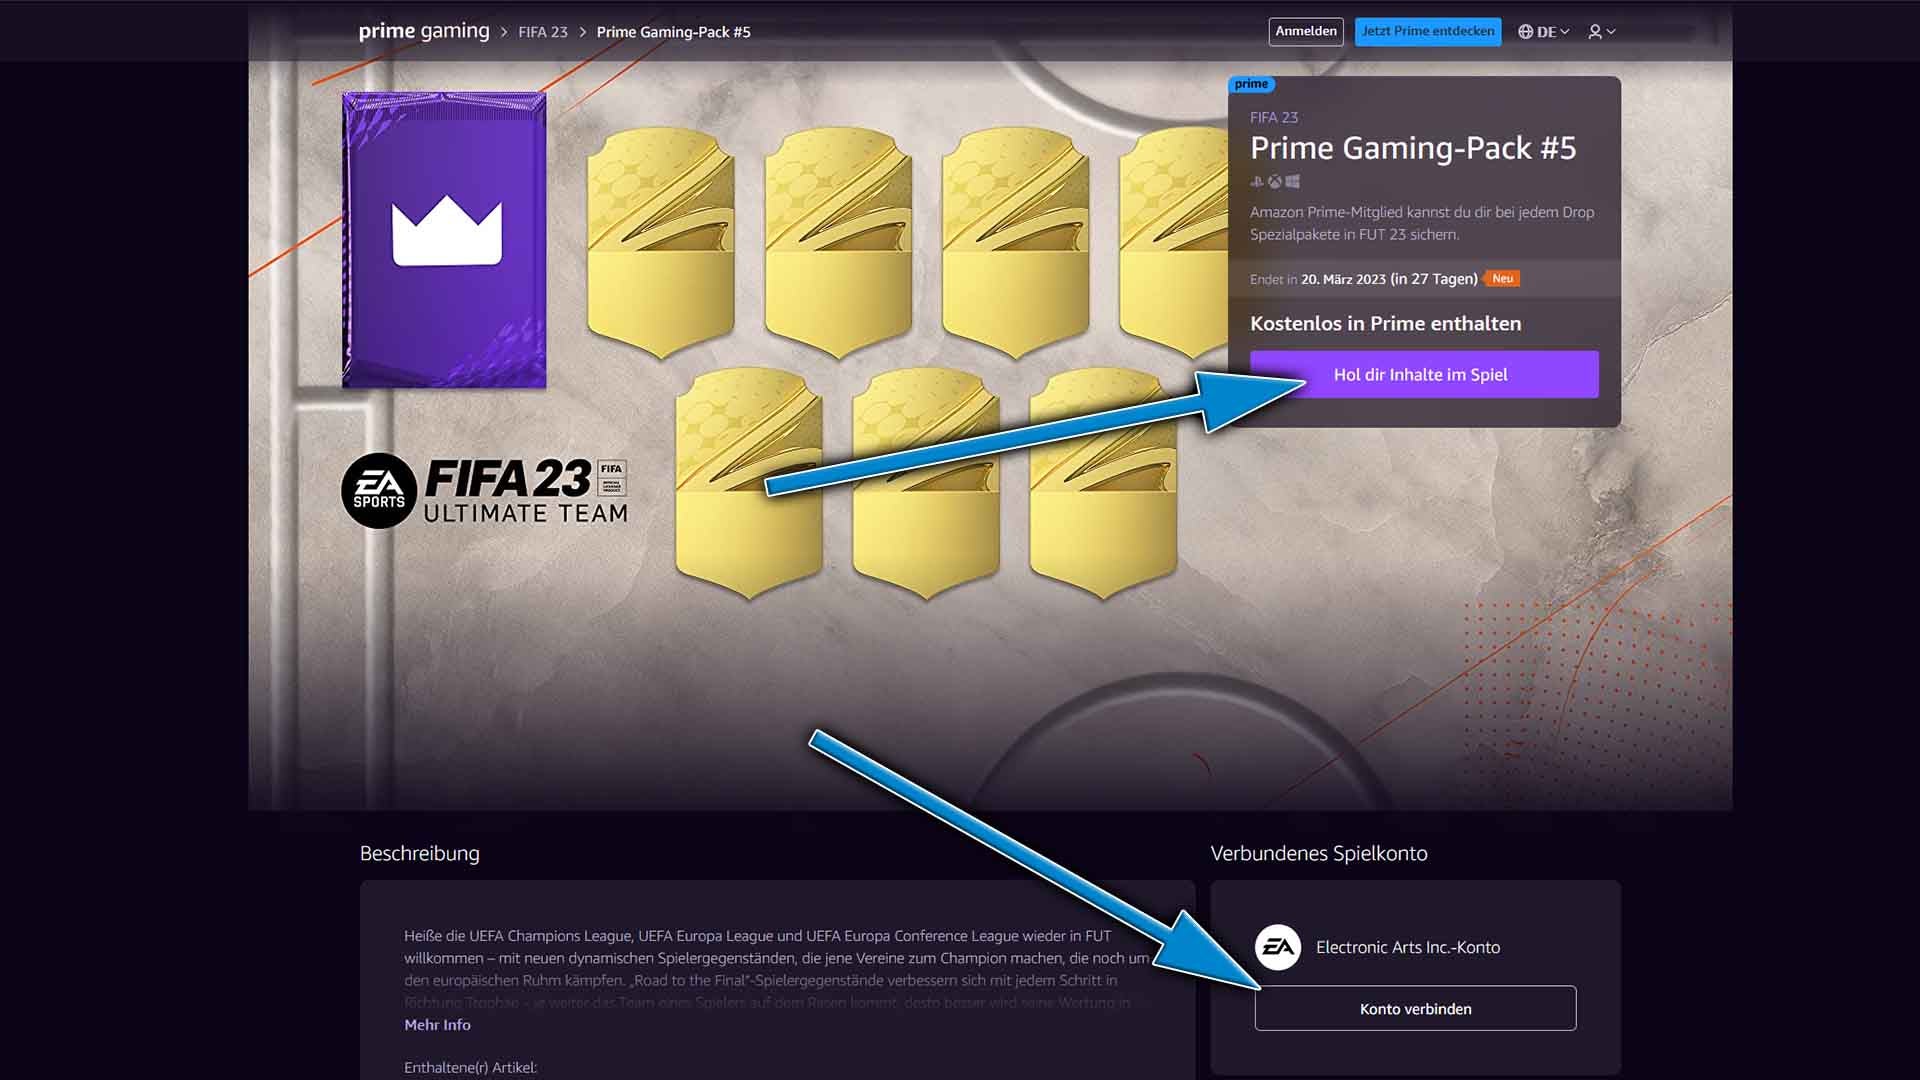 FIFA 23 Prime Gaming Pack 12 (September) mit Chance auf FUTTIES-Spieler jetzt erhältlich Eurogamer.de